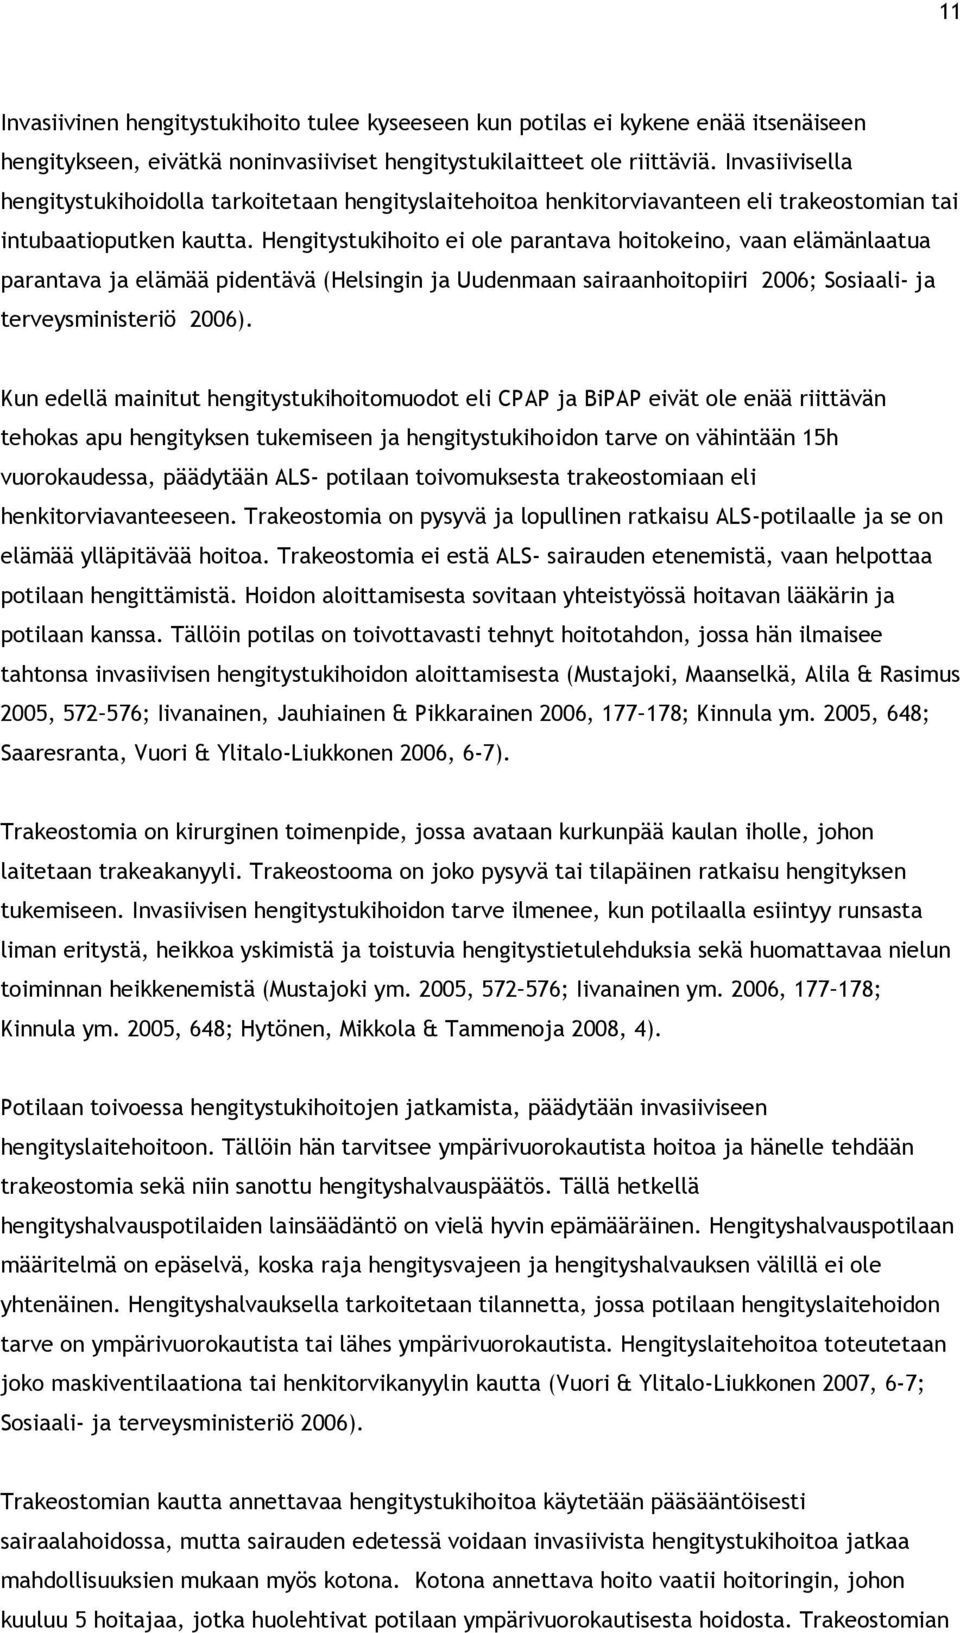 Hengitystukihoito ei ole parantava hoitokeino, vaan elämänlaatua parantava ja elämää pidentävä (Helsingin ja Uudenmaan sairaanhoitopiiri 2006; Sosiaali- ja terveysministeriö 2006).